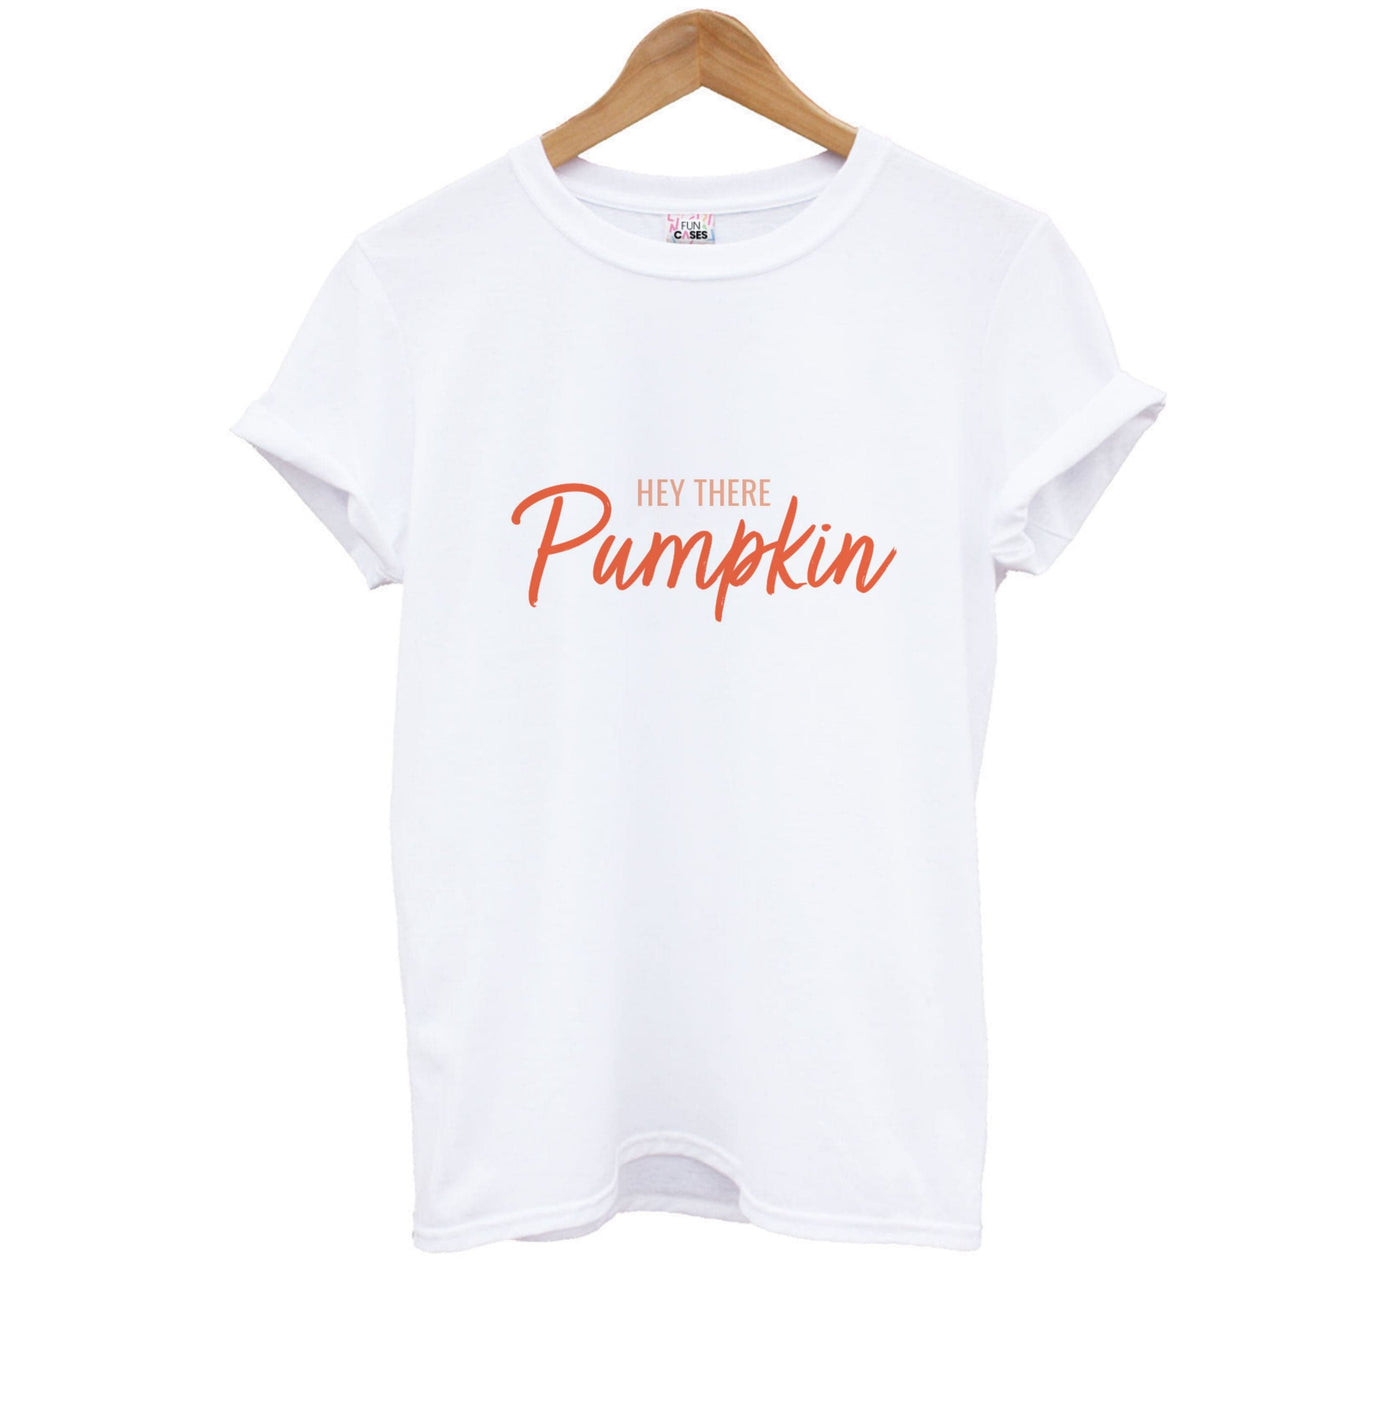 Hey There Pumpkin - Halloween Kids T-Shirt